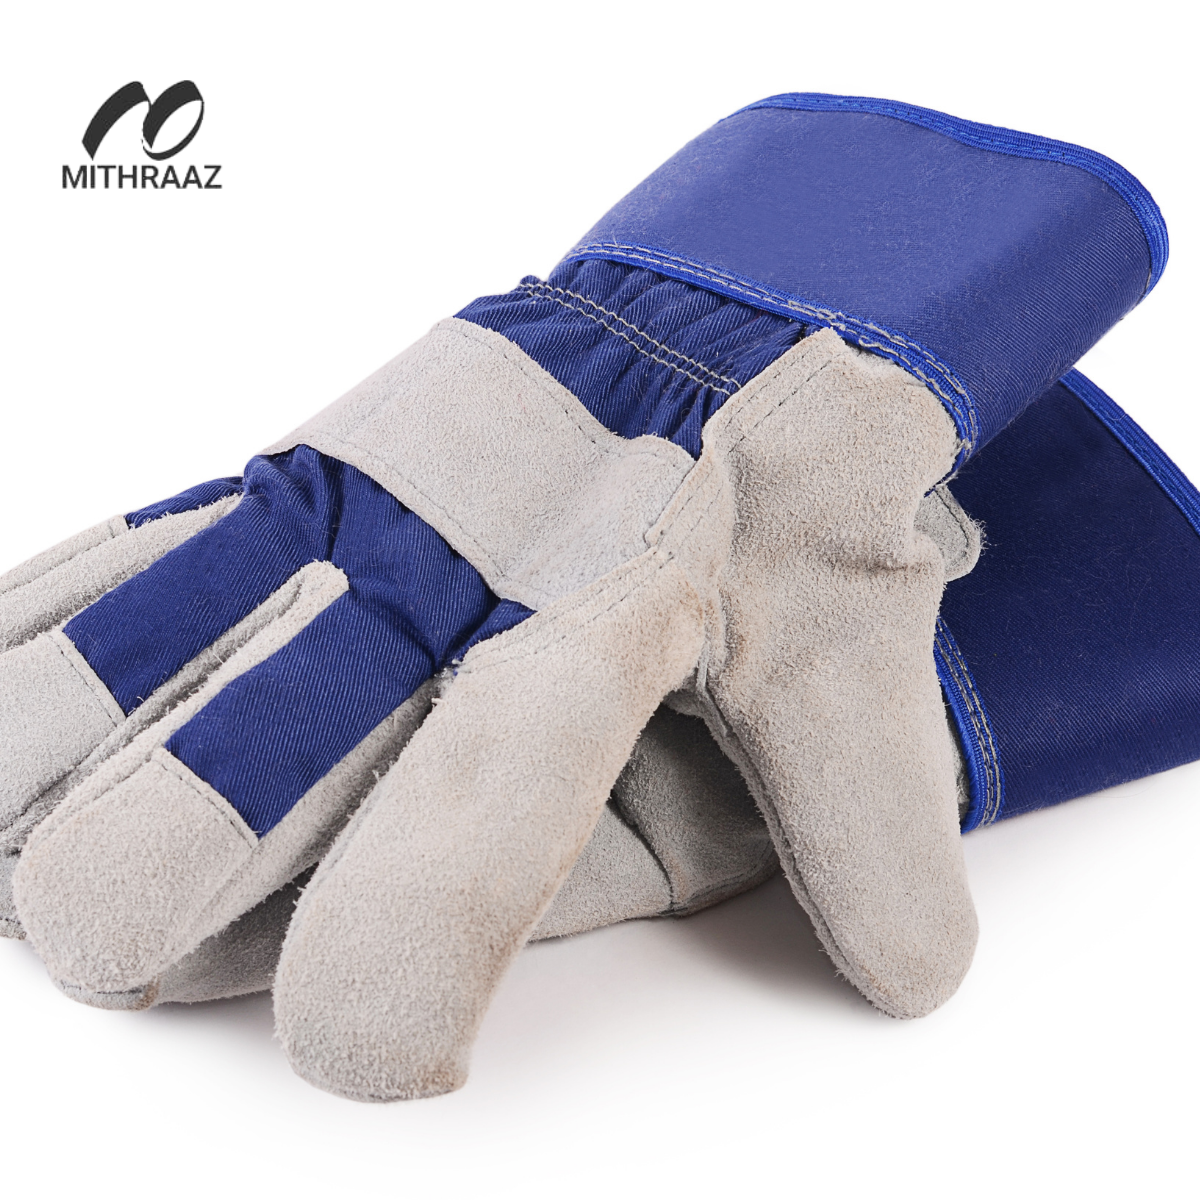 Mithraaz Goal Keeper Gloves